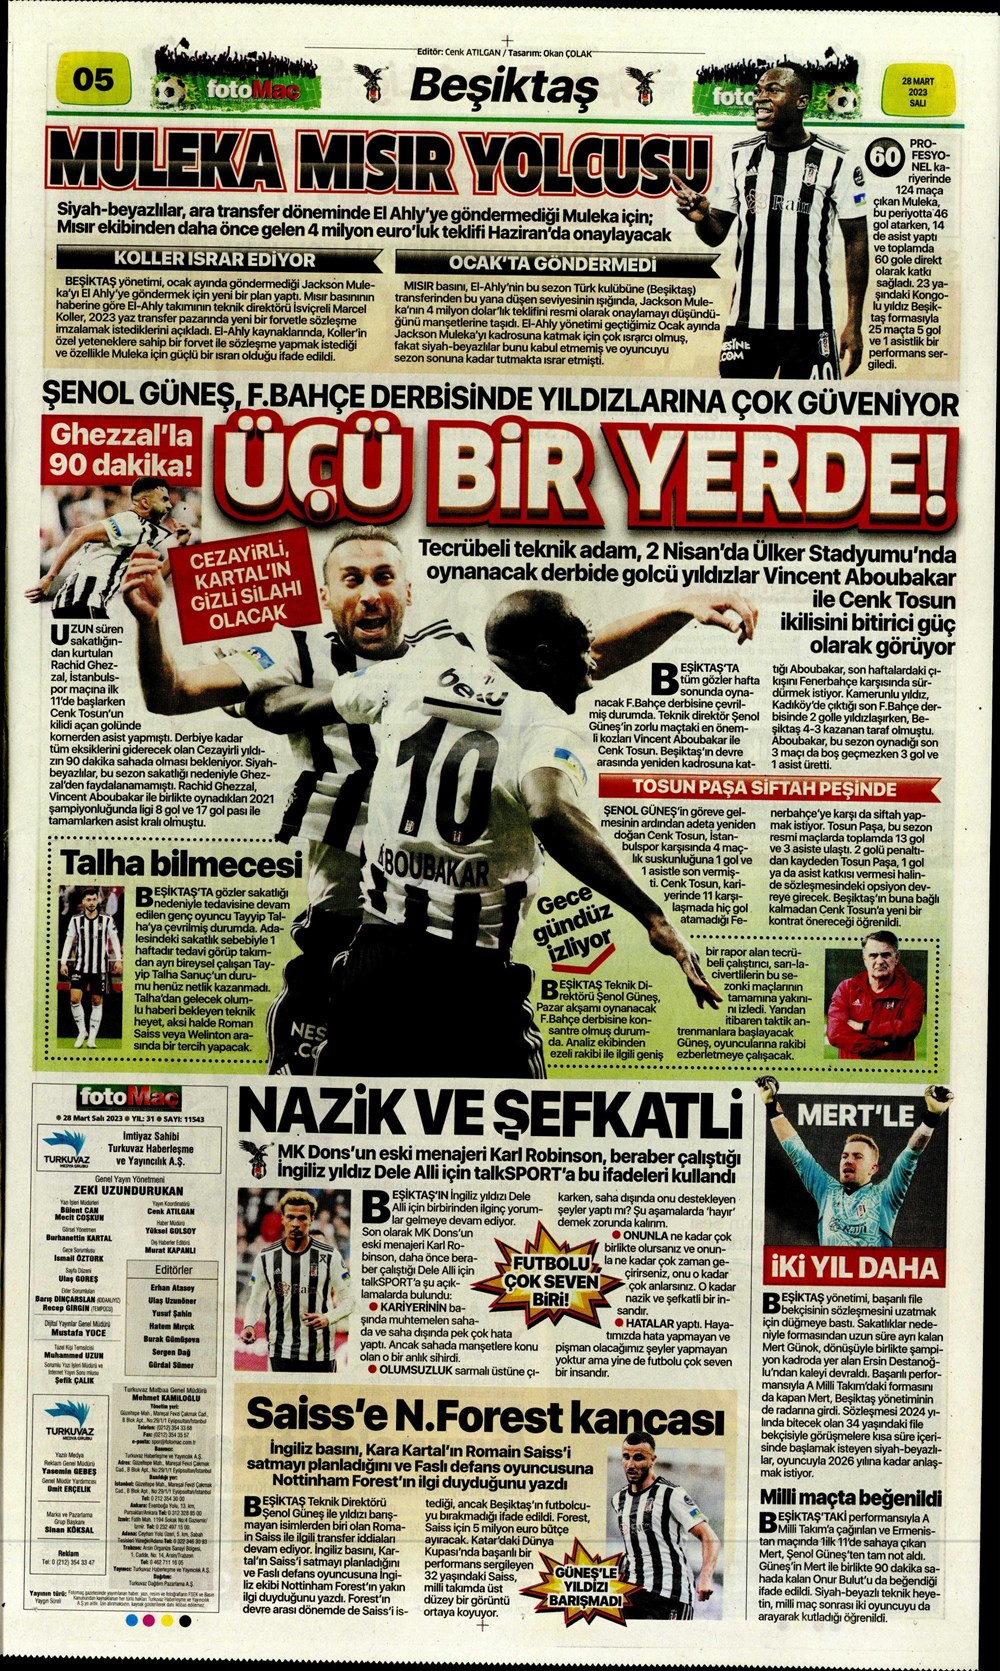 "Vurduğumuz gol olsun" - Sporun manşetleri - 15. Foto